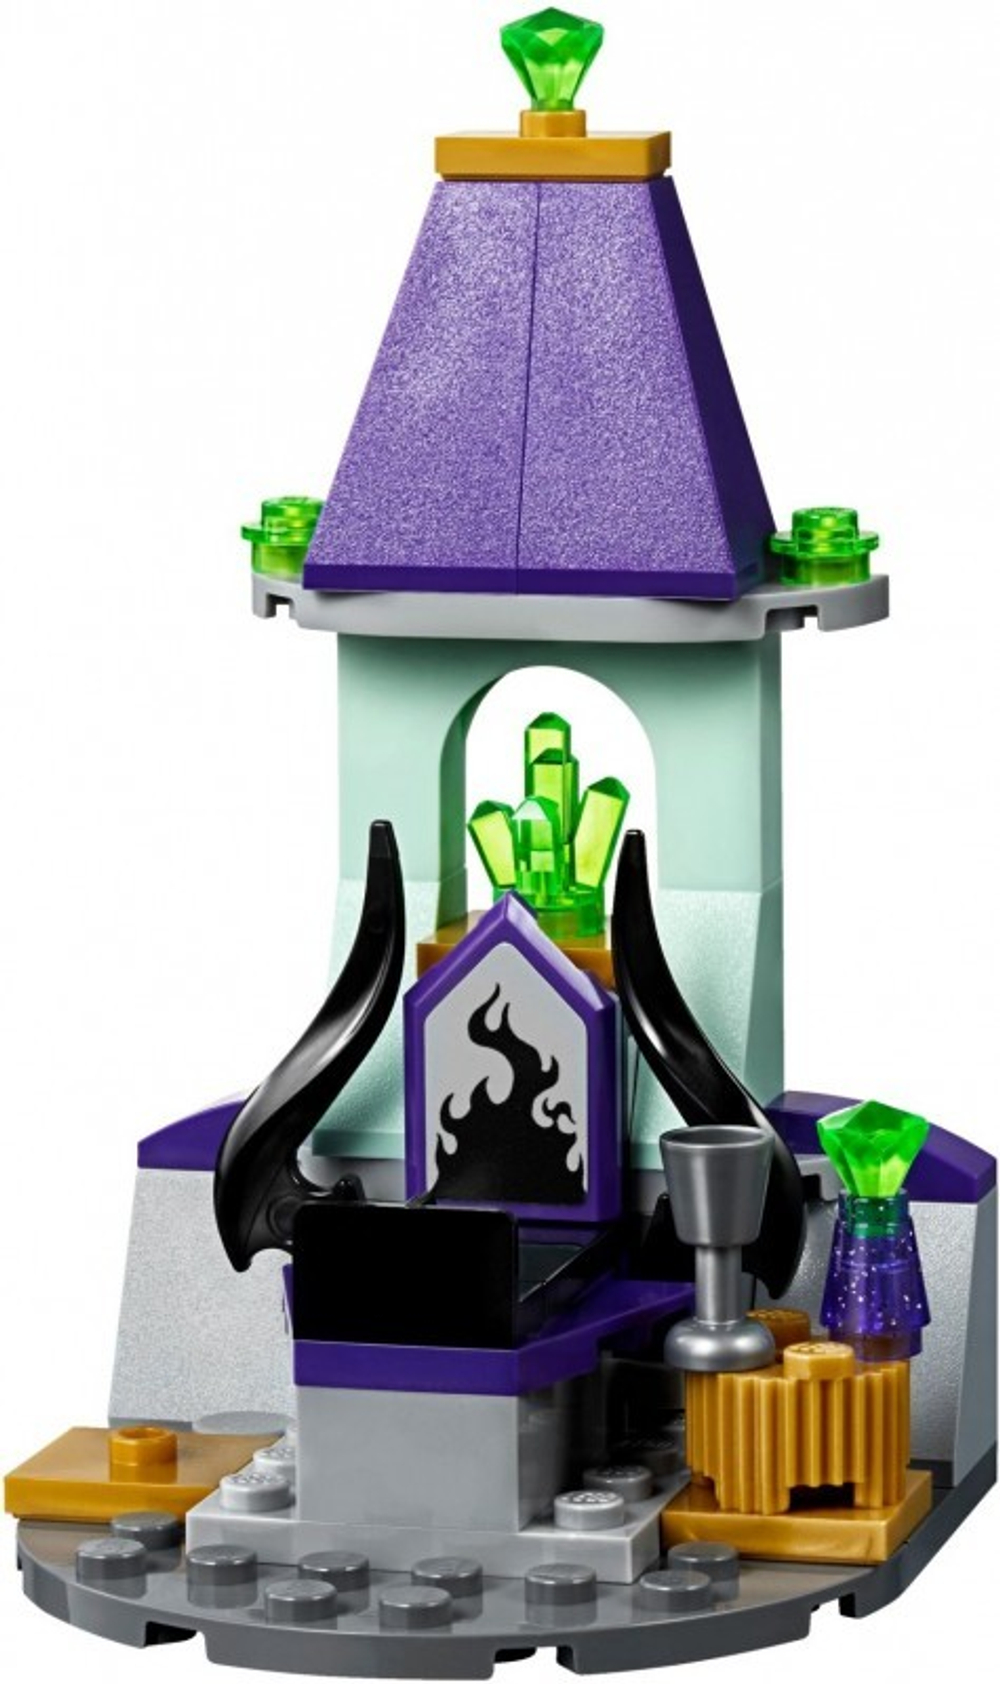 LEGO Disney Princess: Сказочный замок Спящей Красавицы 41152 — Sleeping Beauty's Fairytale Castle — Лего Принцессы Диснея